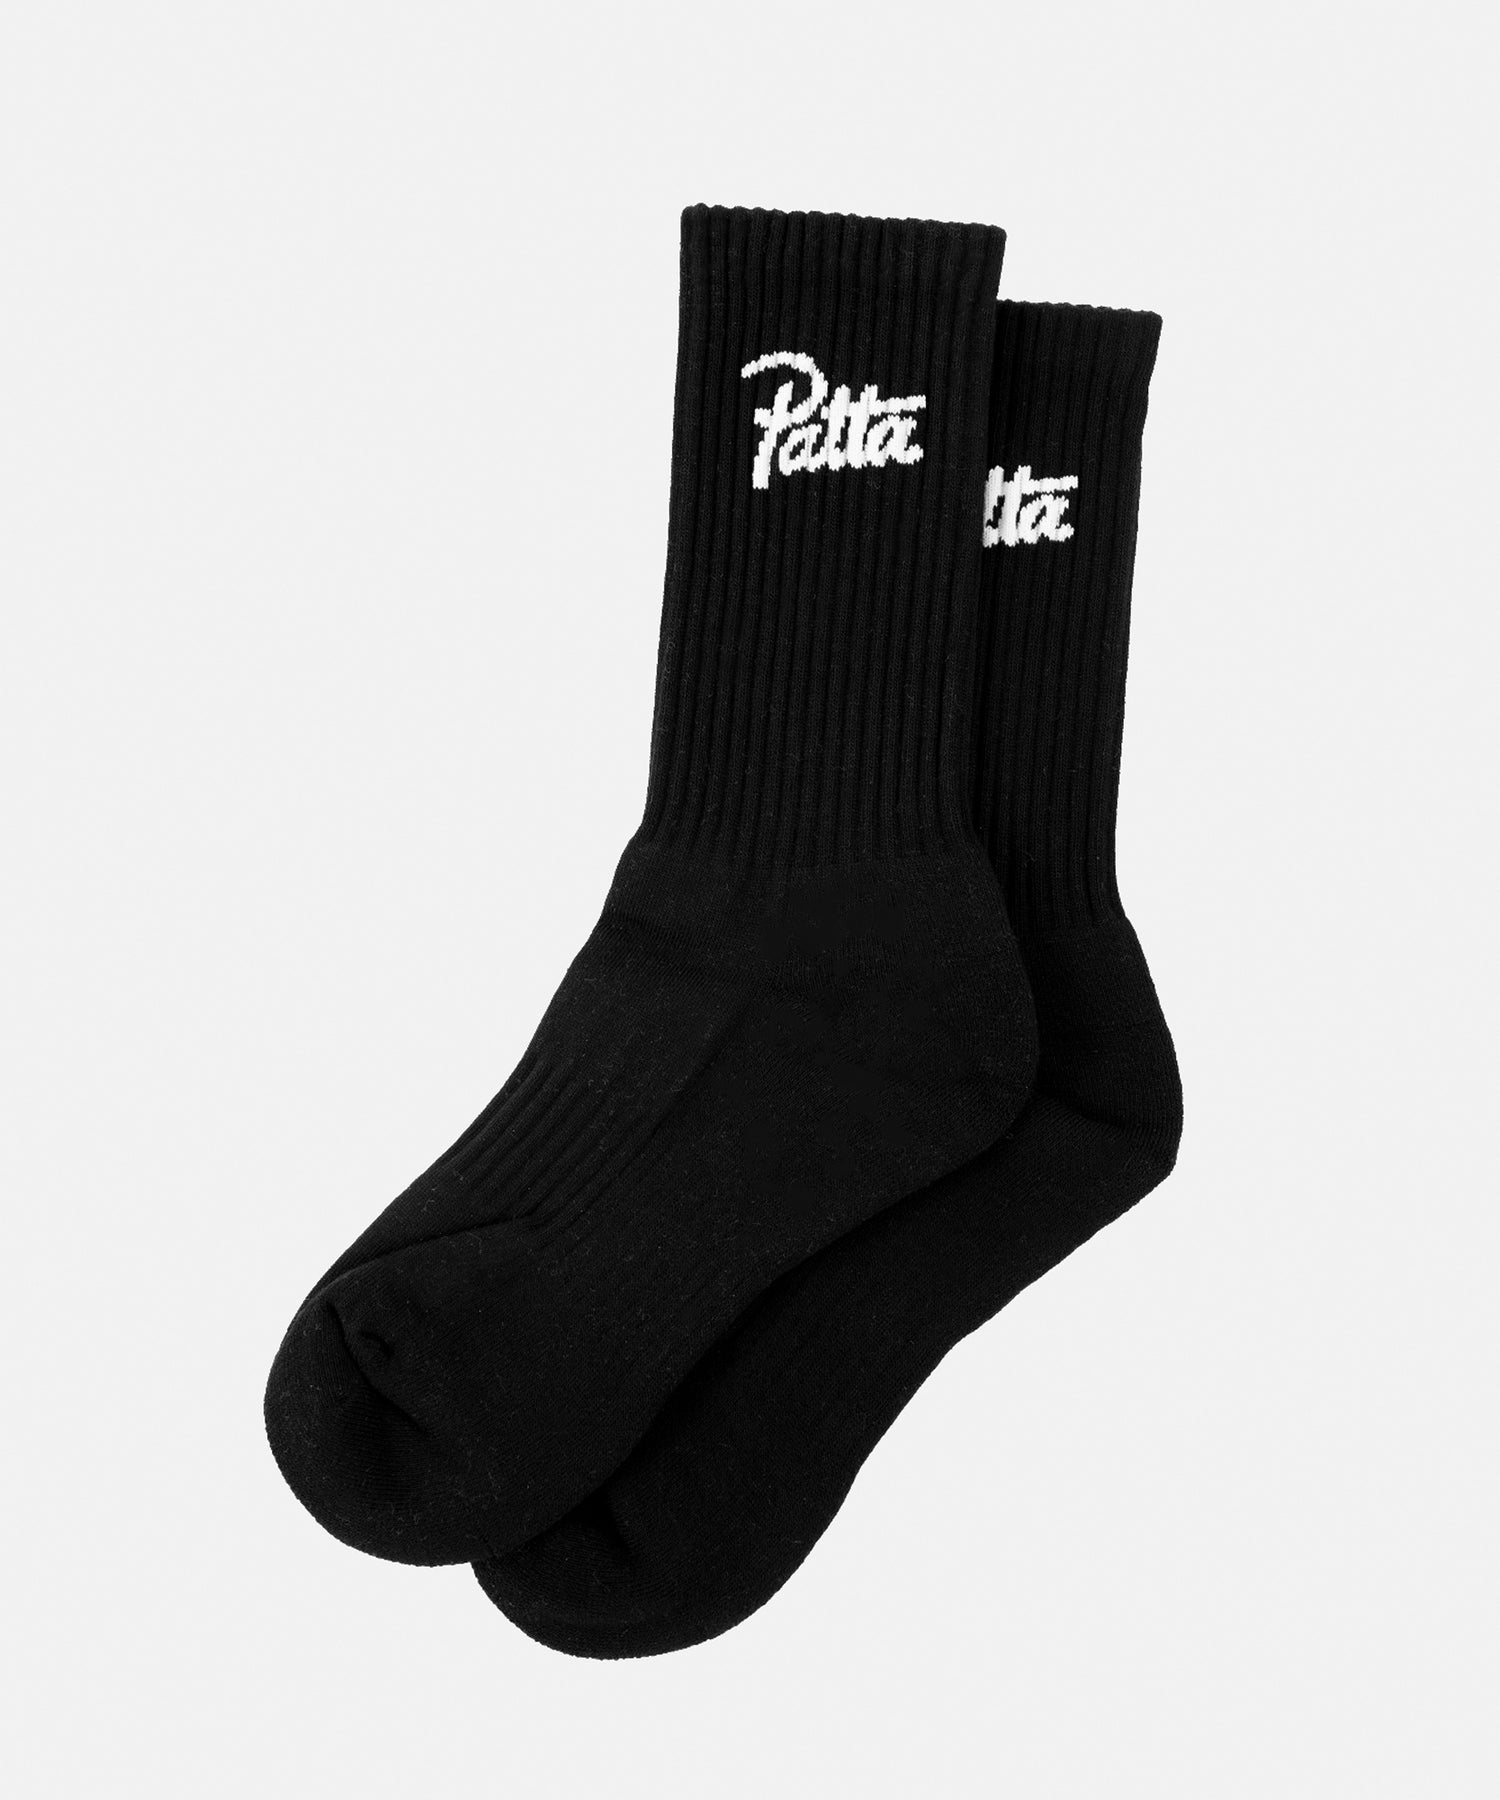 Patta Sports Socks 2-Pack (Black)